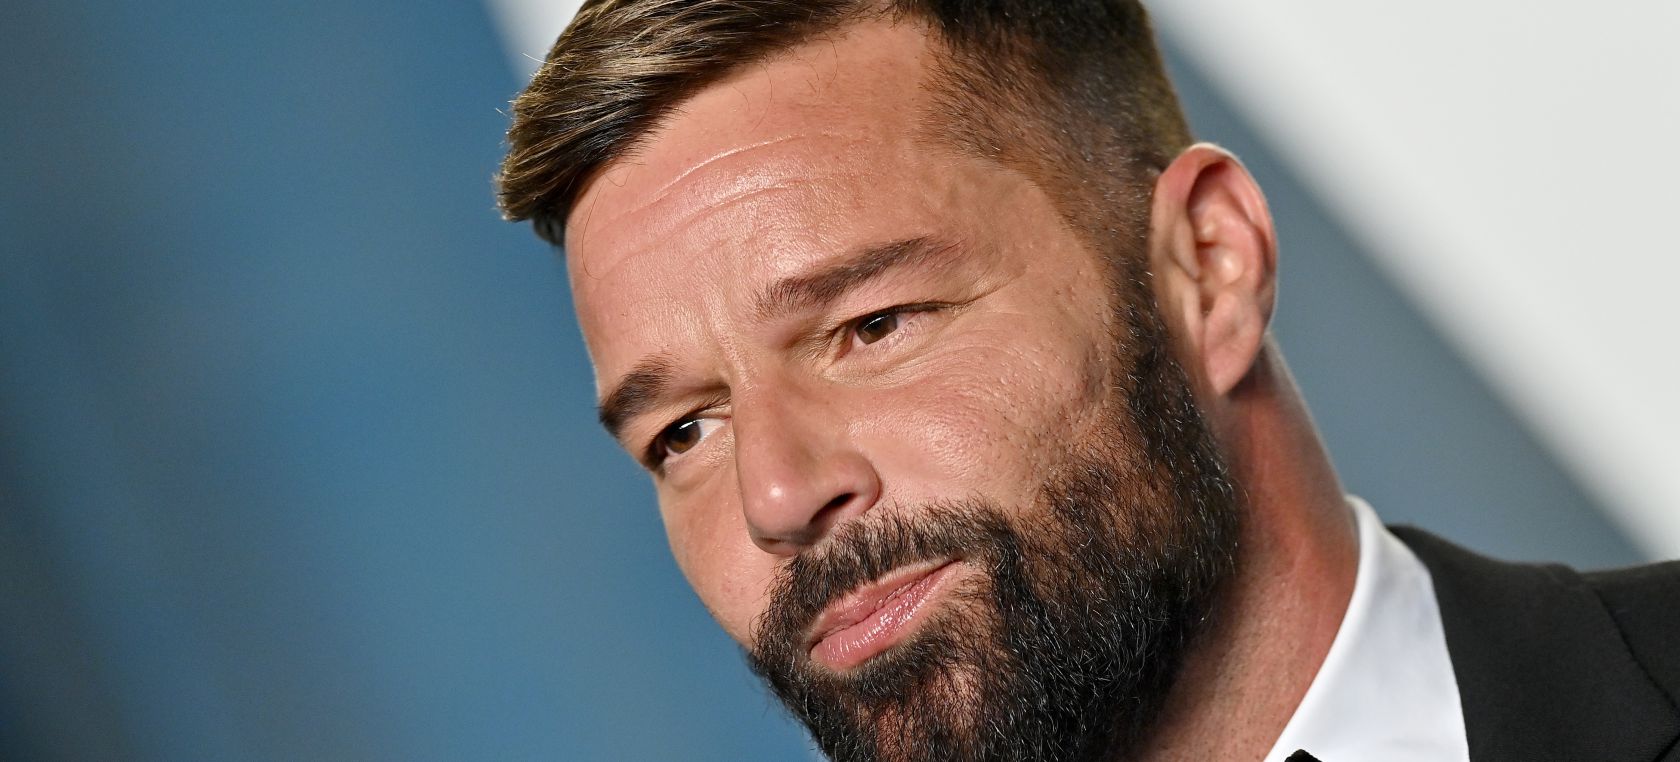 Se emitió una orden en contra de Ricky Martin, por violencia doméstica